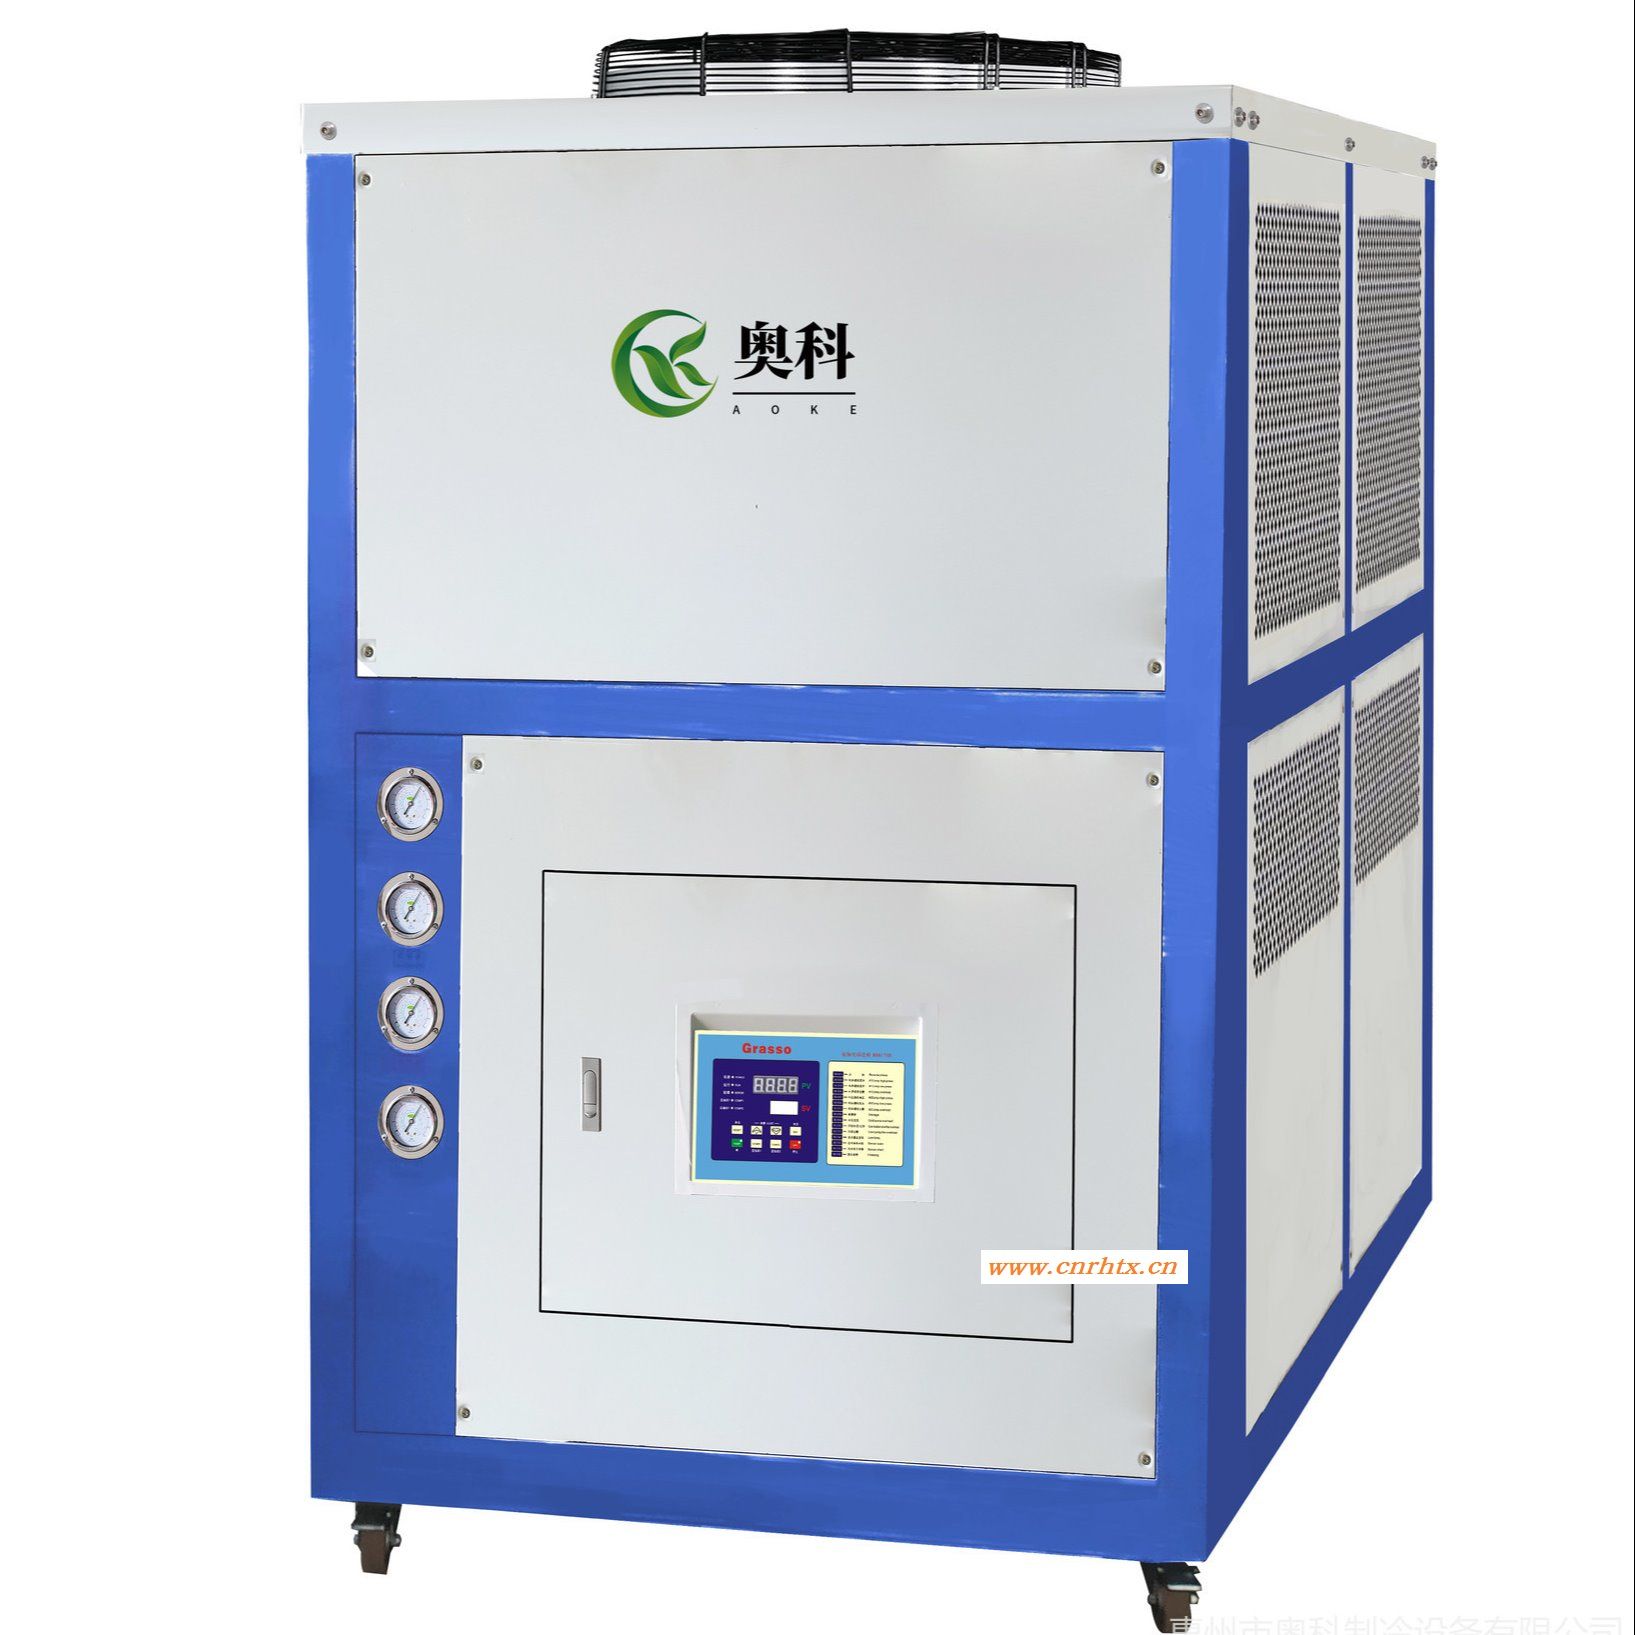 工业冷油机价格 工业冷油机厂家 液压油专用冷油机选型